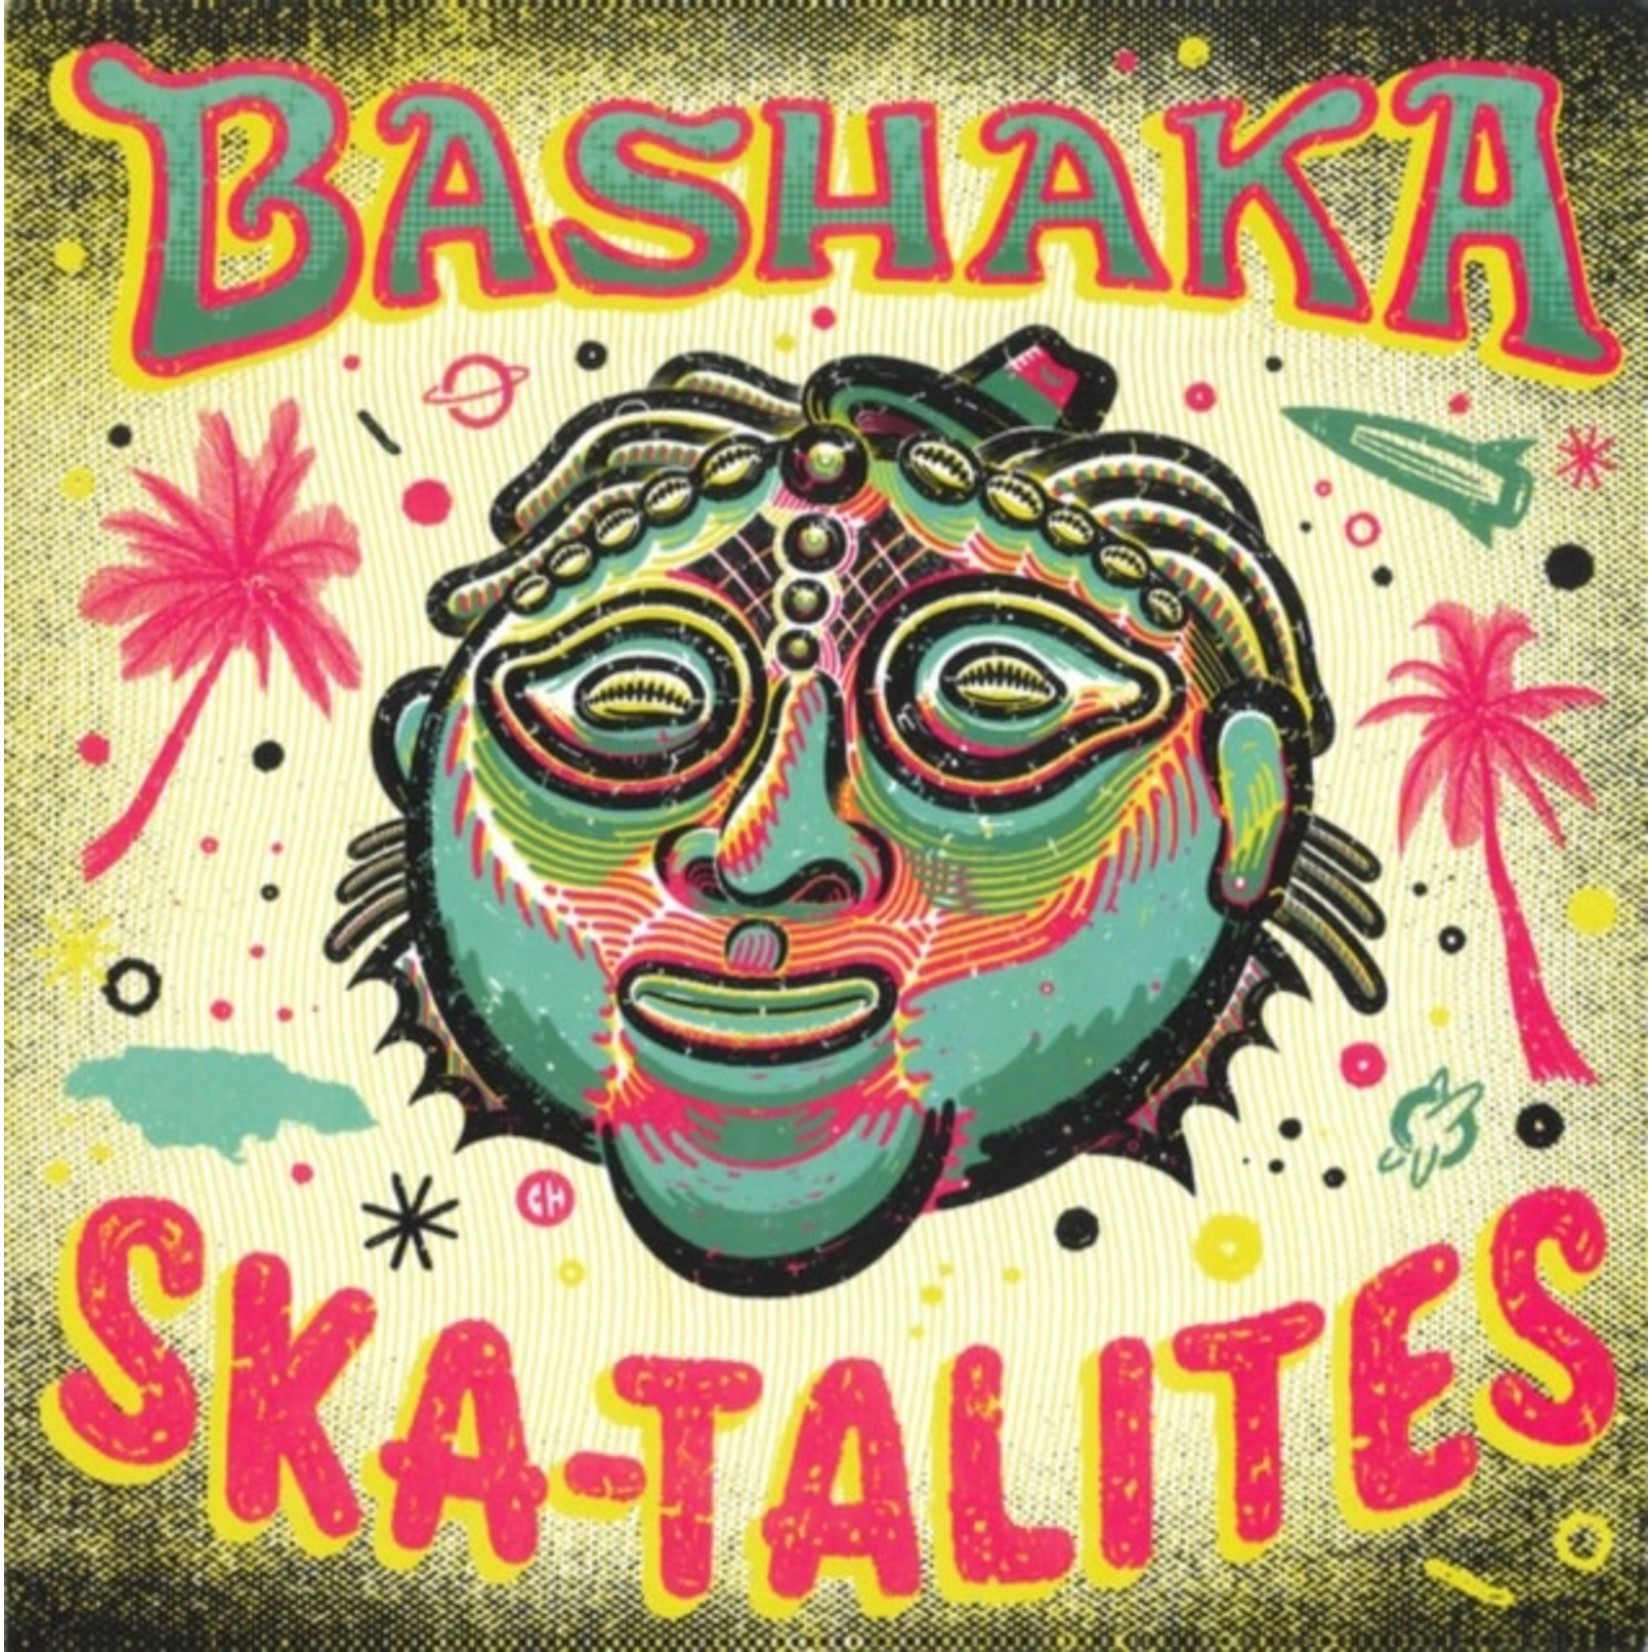 Jump Up Skatalites - Bashaka (LP)